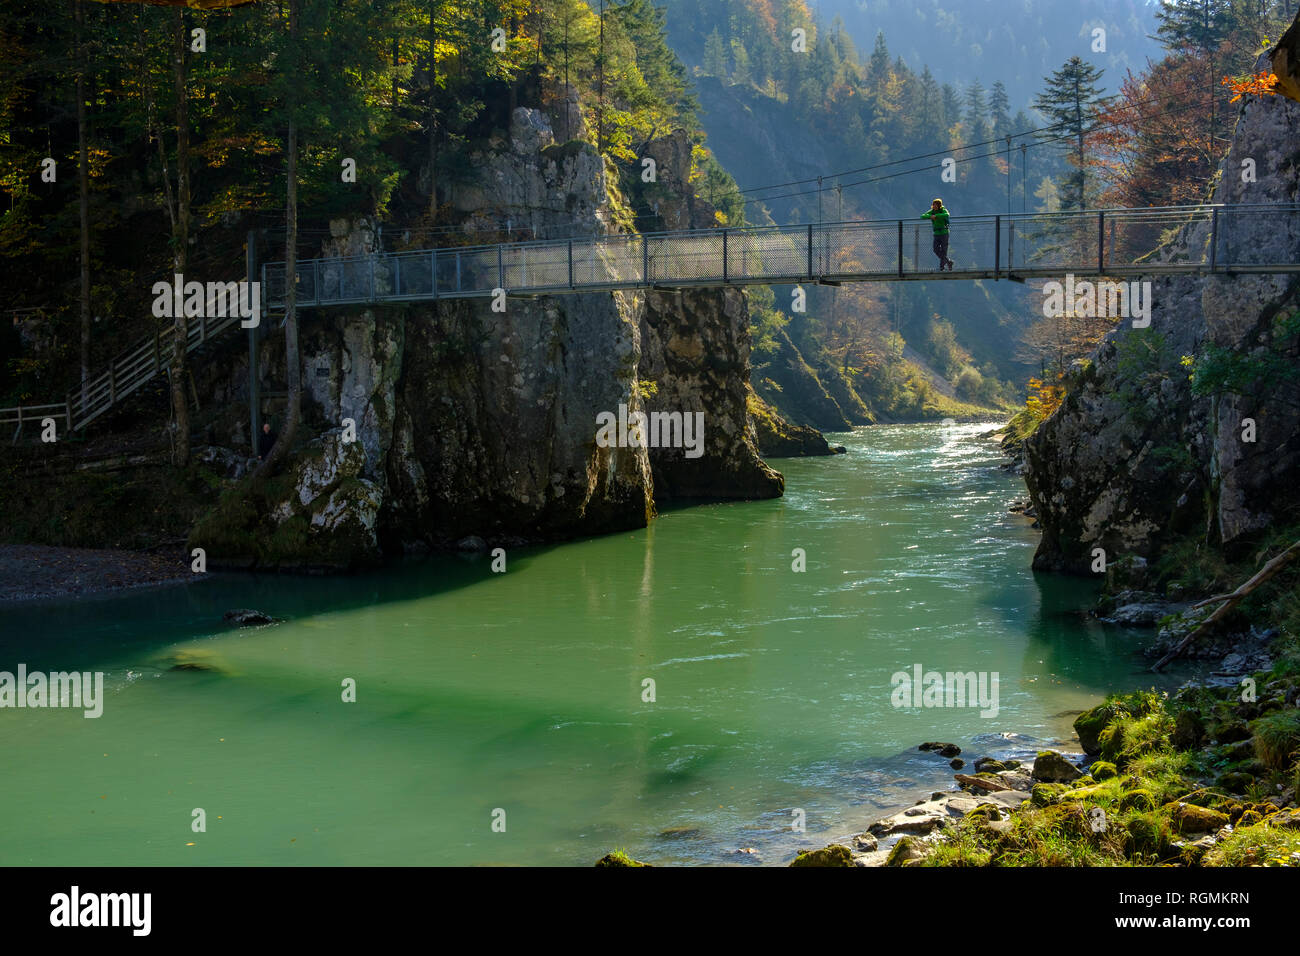 Austria, Tyrol, hiker on suspension bridge looking at Tiroler Ache in autumn Stock Photo